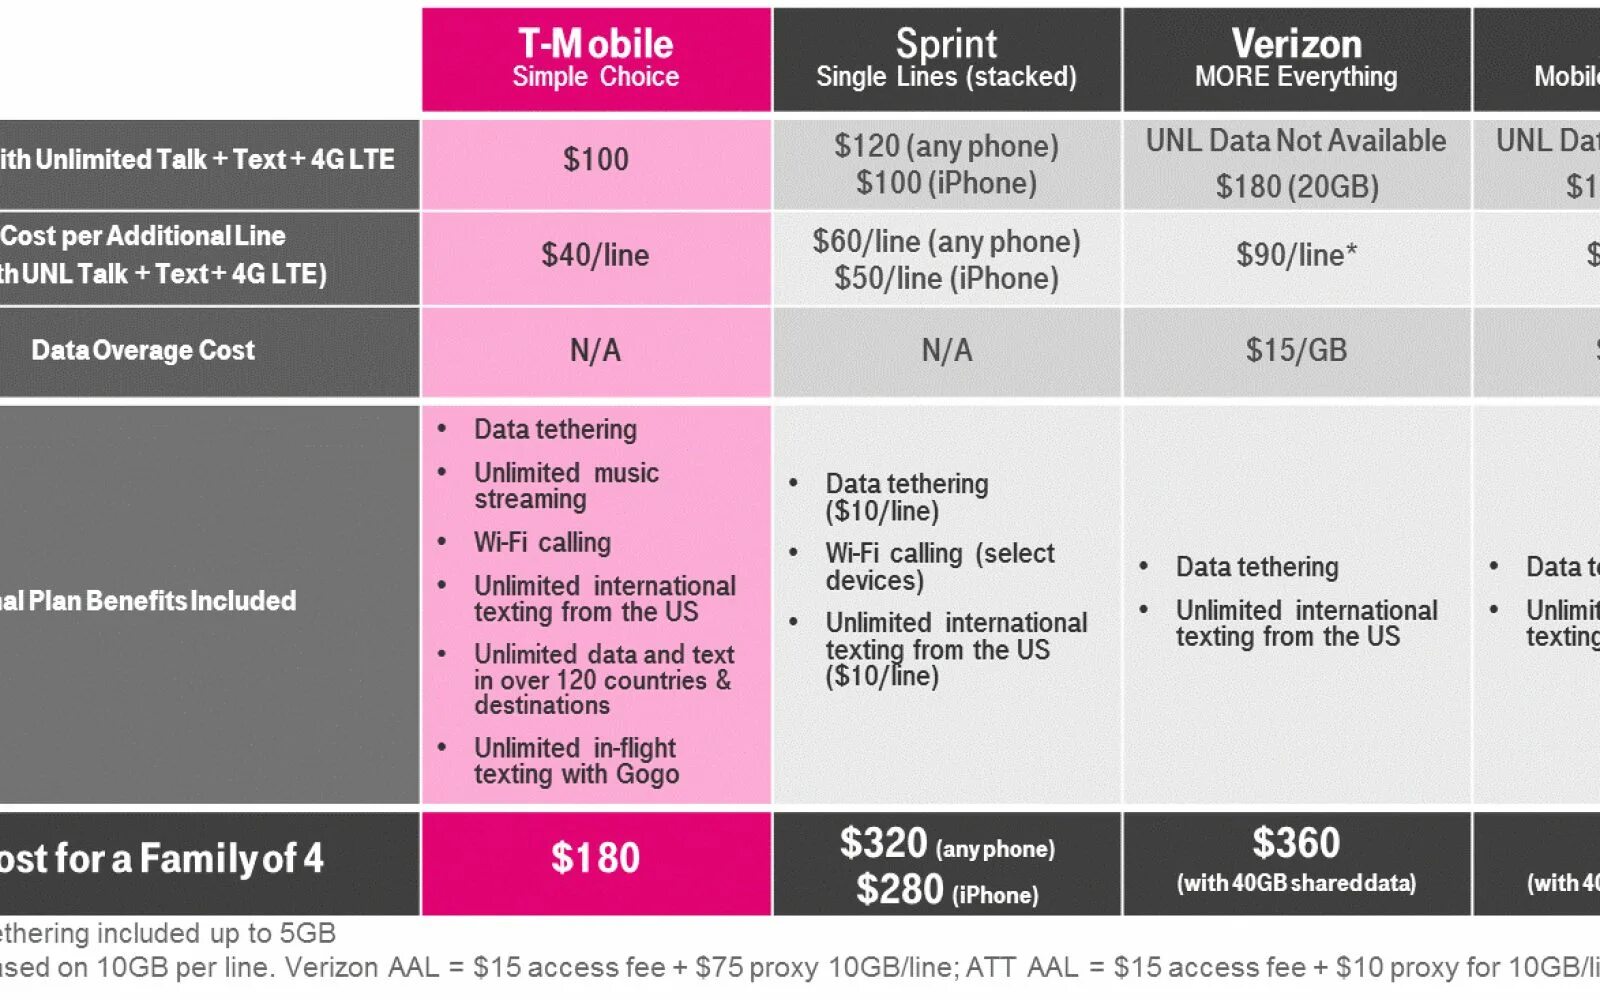 T mobile Verizon. T mobile Sprint. T mobile Sprint графики. T mobile MK Tarifi. Lines plan